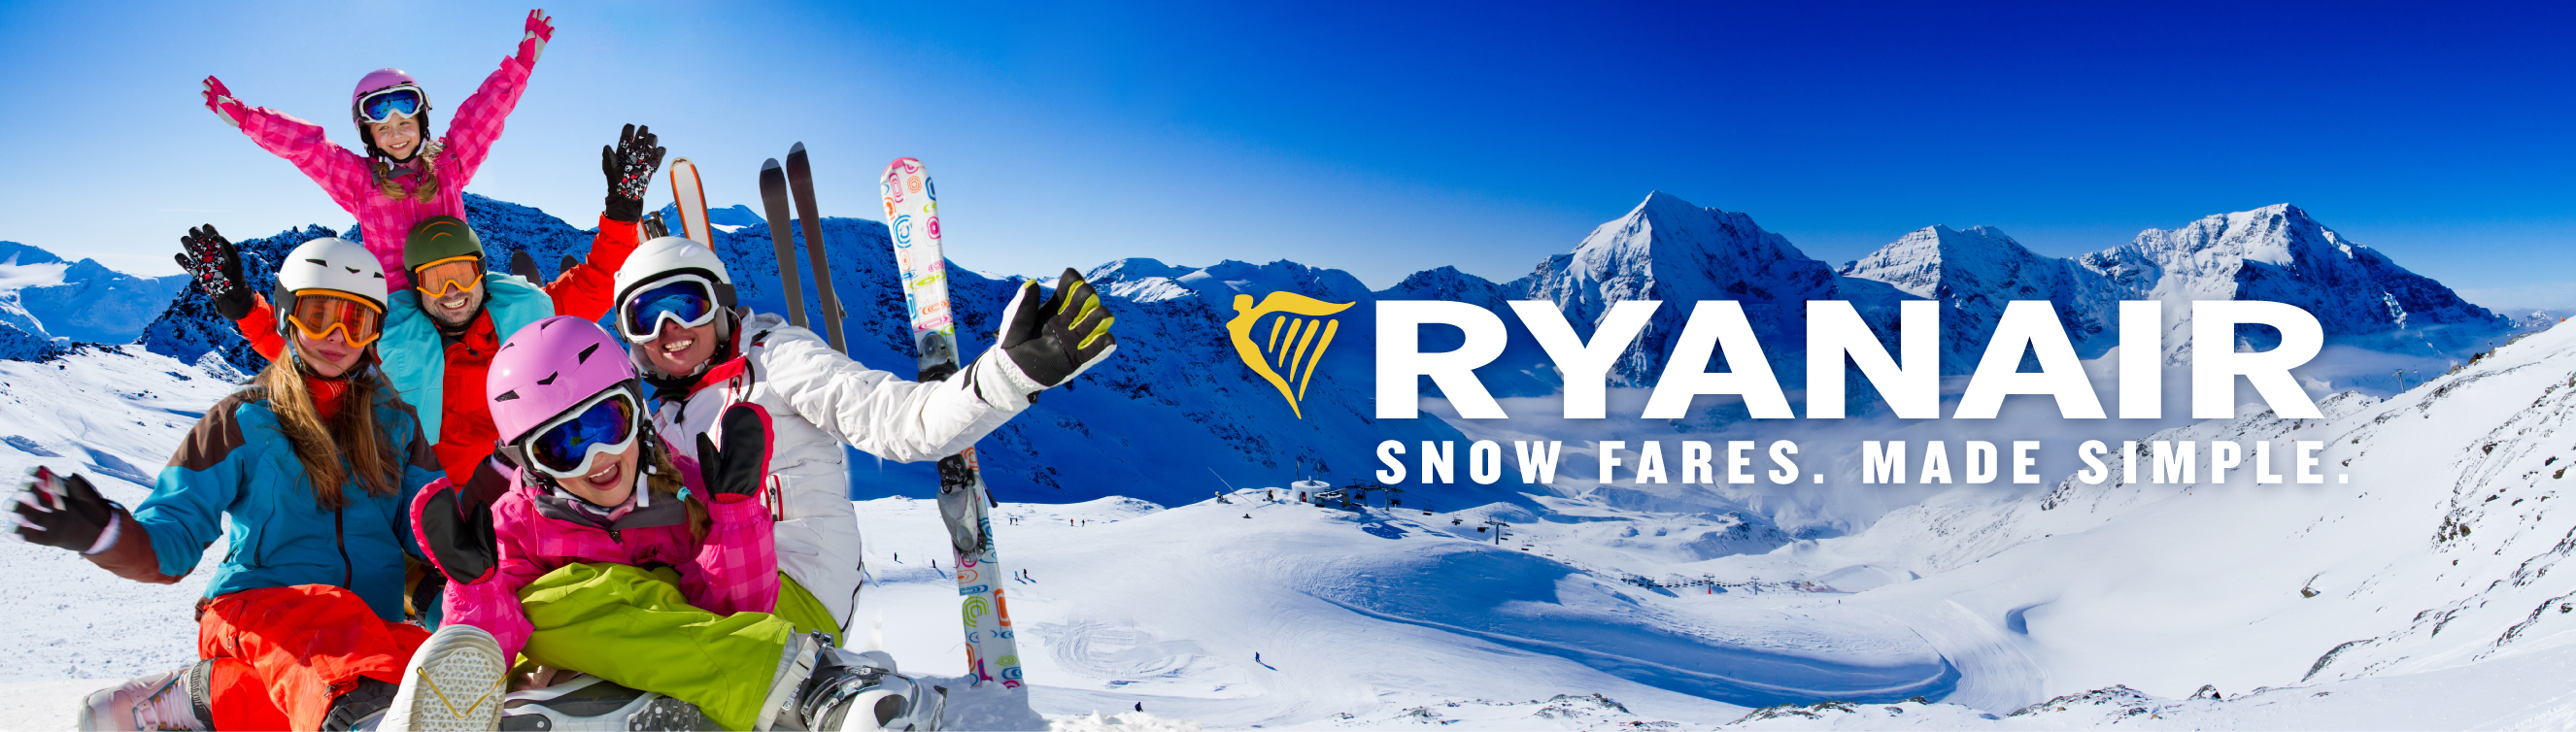 Ryanair ogłasza specjalną promocję zimową